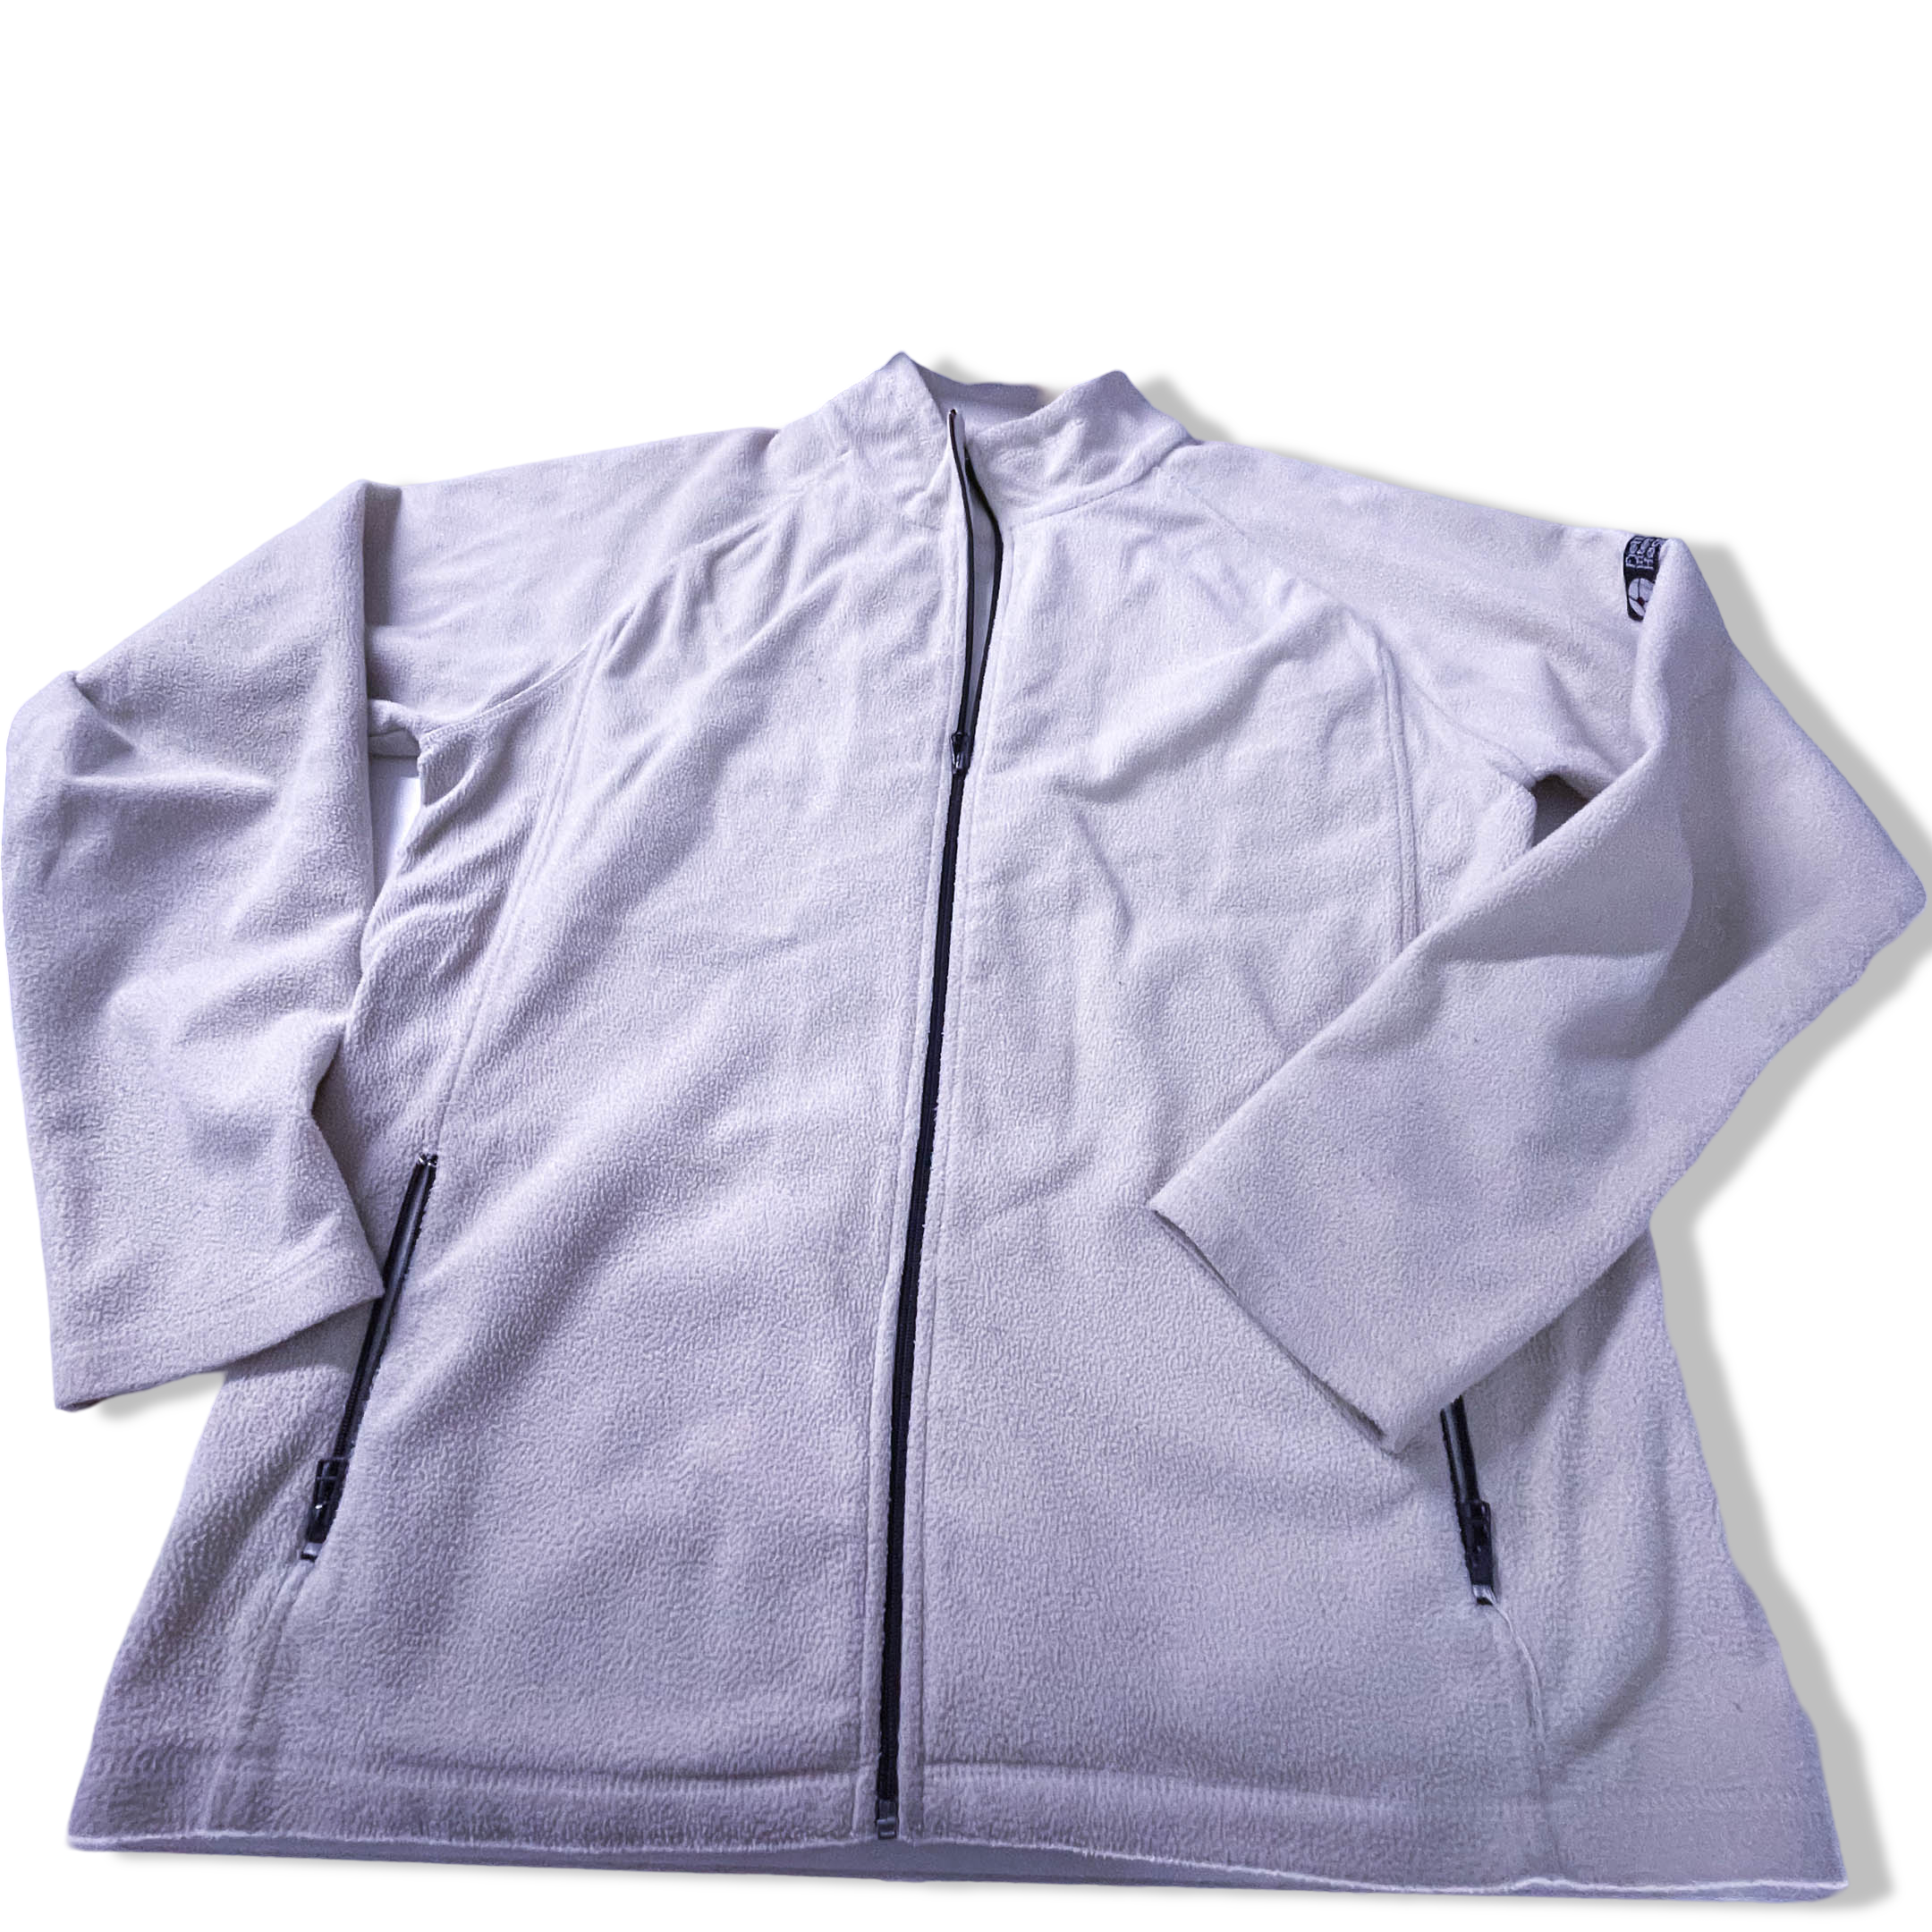 Vintage Cream Fleece full zip high neck jacket in XL| L31 W23|SKU 3865